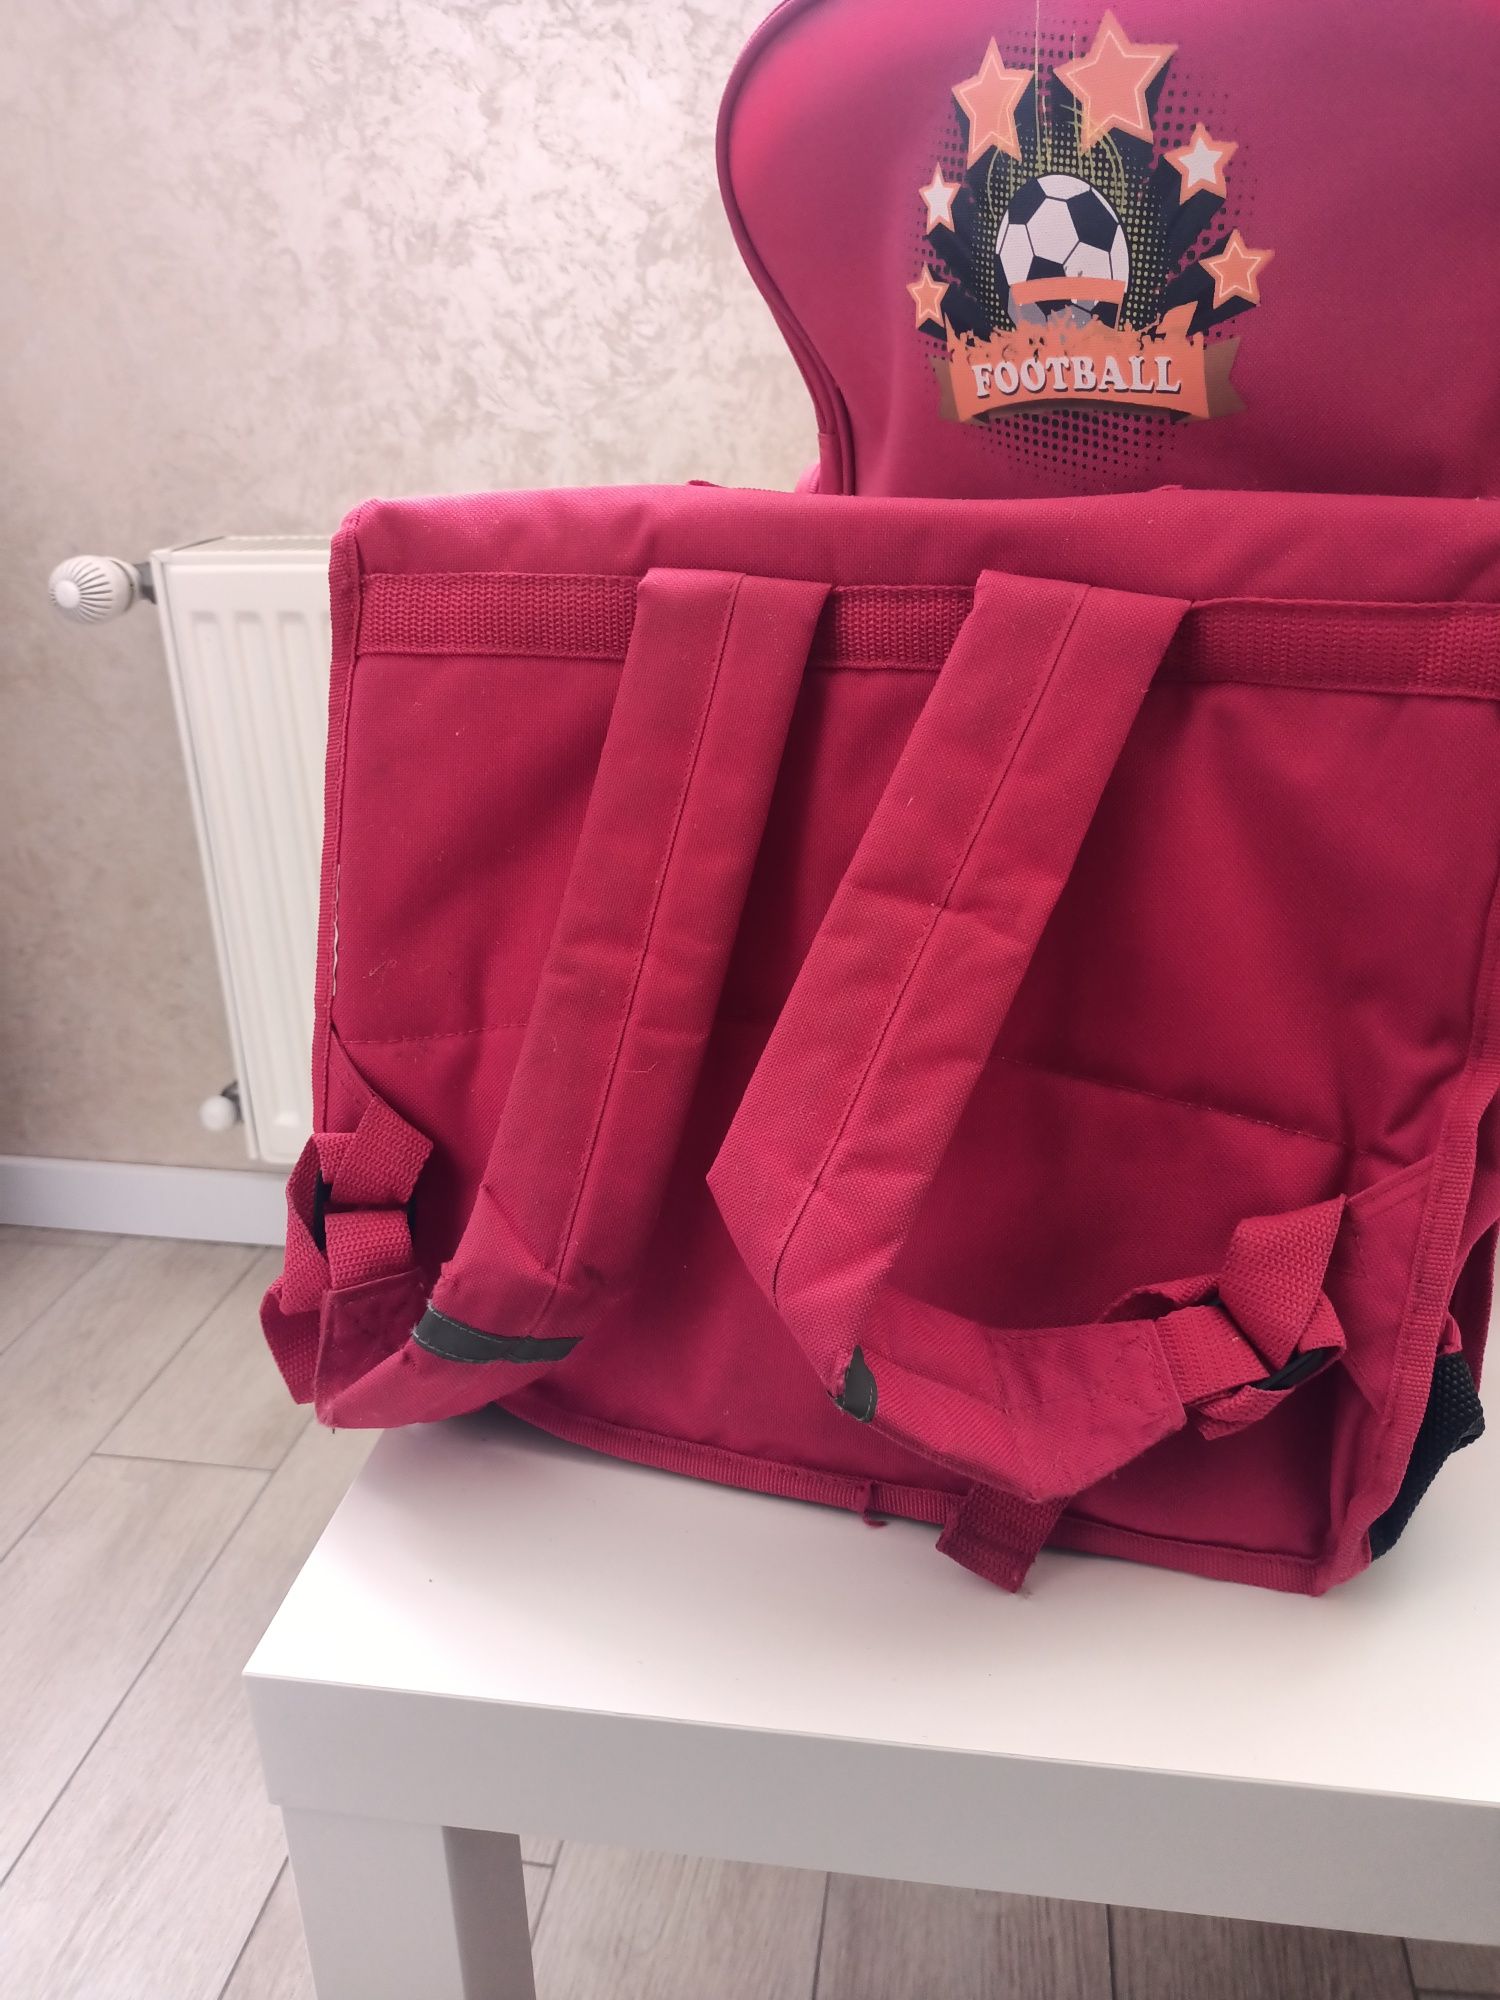 Подростковый чемодан рюкзак на колесах+рюкзак папка для обучения.